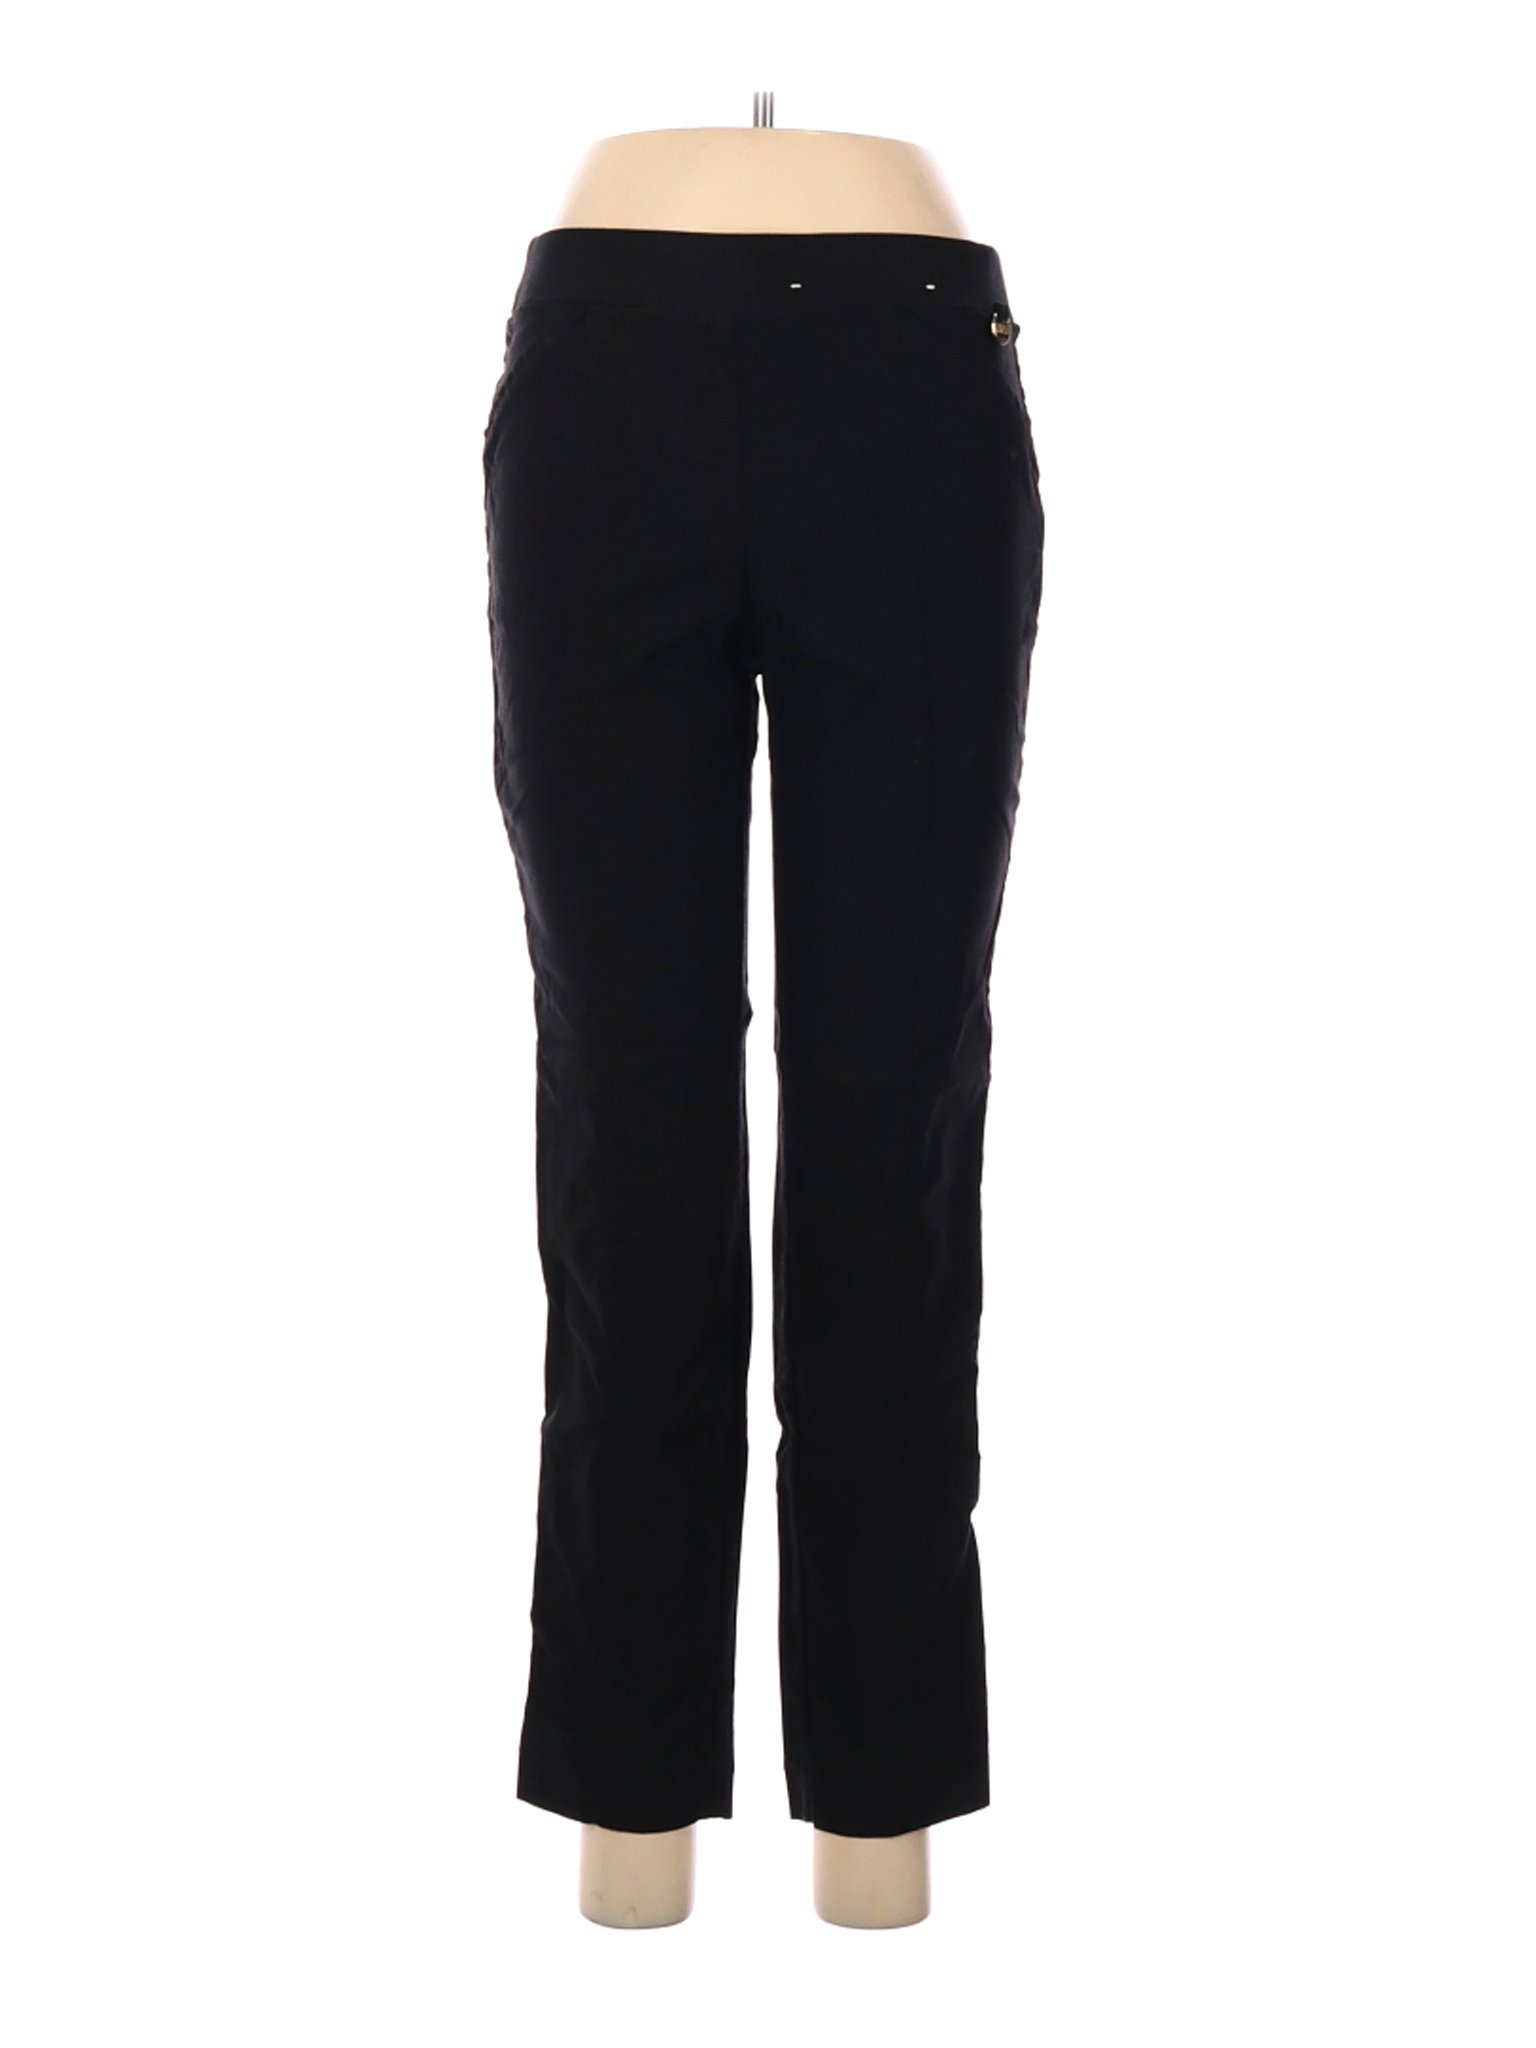 Company Ellen Tracy Women Black Casual Pants M | eBay